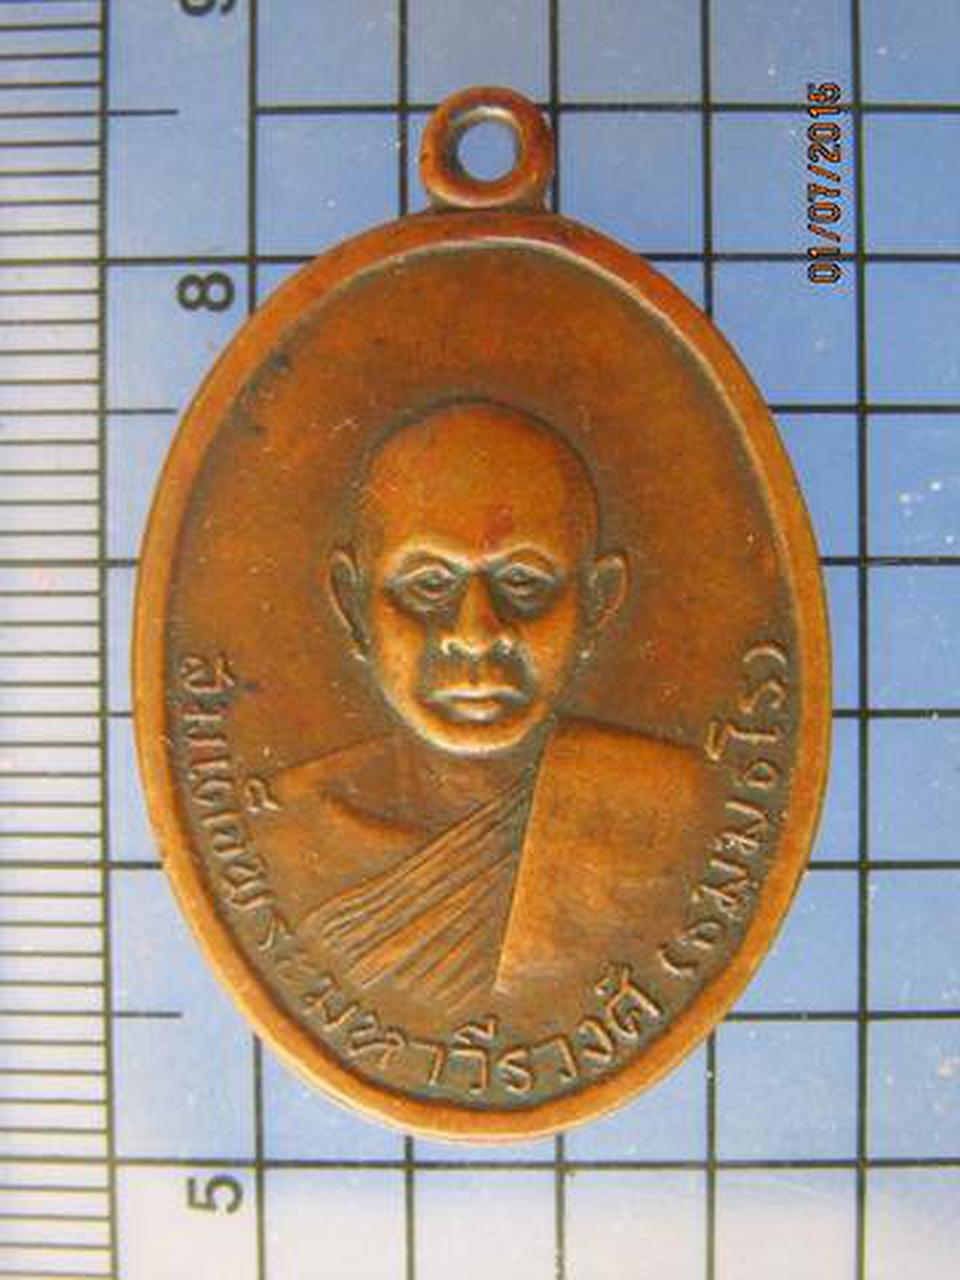 2343 เหรียญสมเด็จพระมหาวีรวงศ์ วัดป่าสุมนามัย อ.บ้านไผ่ ปี 2